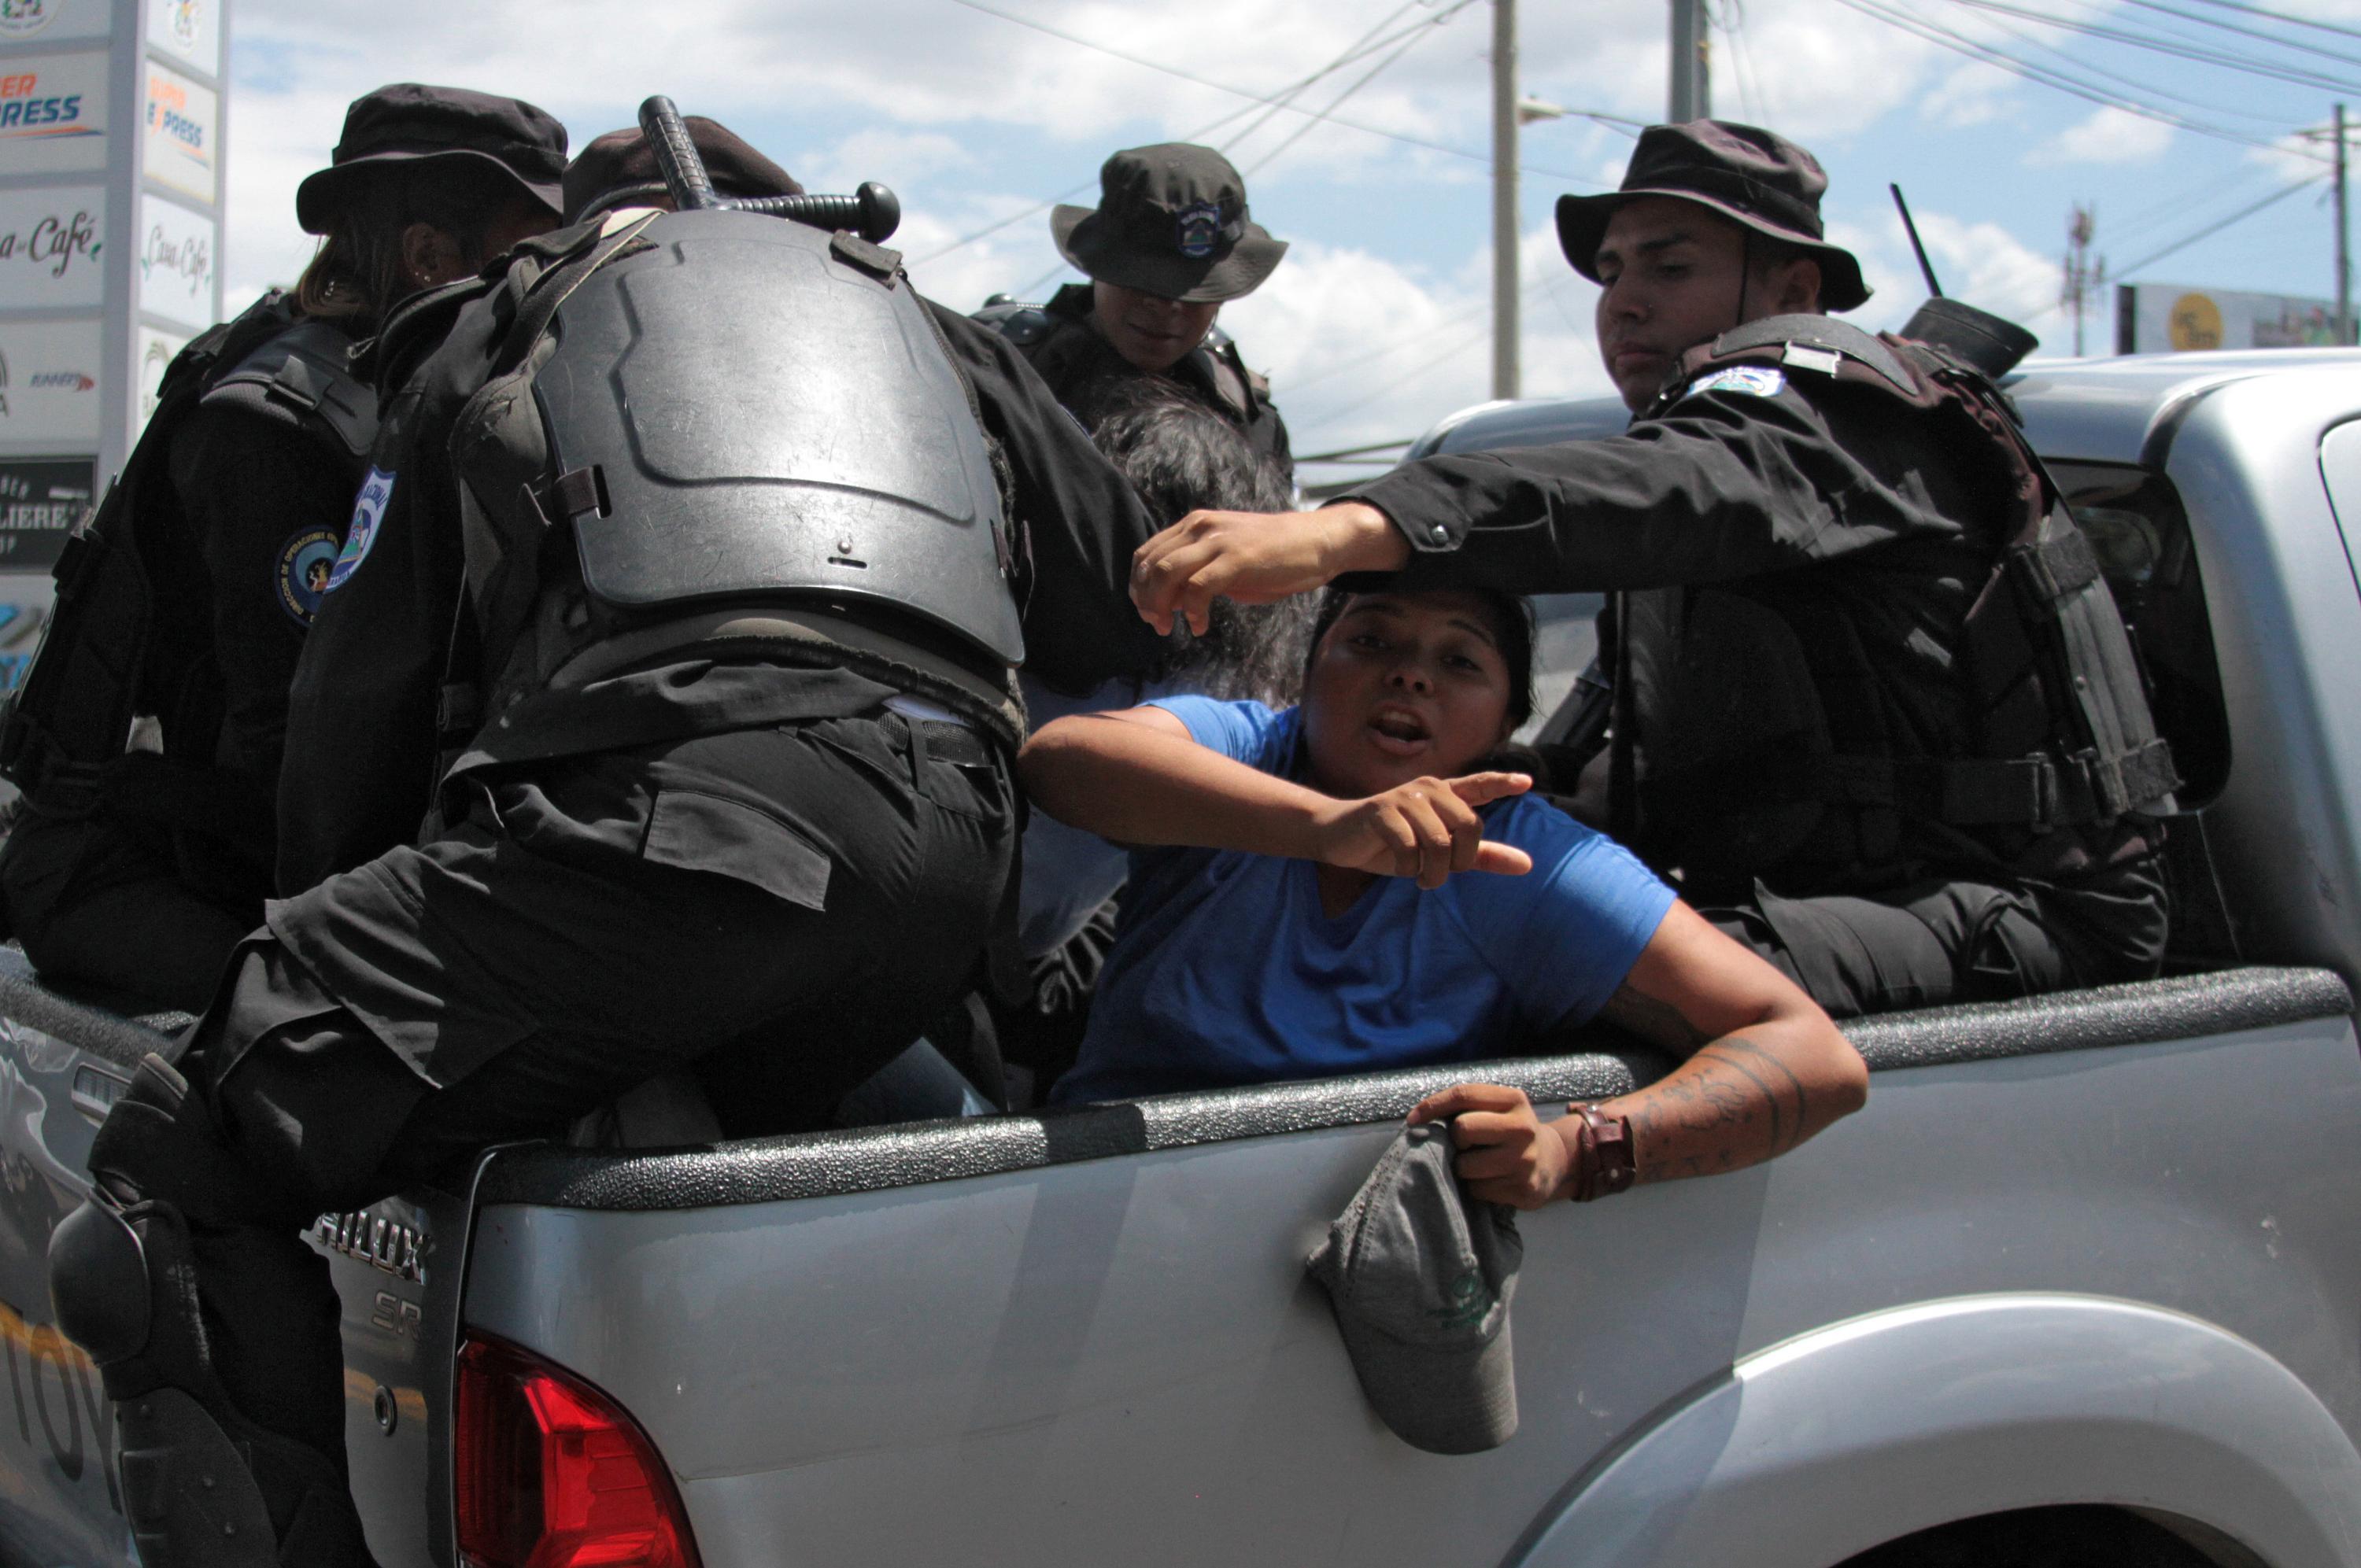 Agentes de la policía antidisturbios de Nicaragua arrestan a dos personas mientras se dirigían a una manifestación convocada por grupos de la oposición para exigir al gobierno la liberación de los detenidos por participar en protestas antigubernamentales en Managua el 16 de marzo de 2019. (Foto de Maynor Valenzuela / AFP)